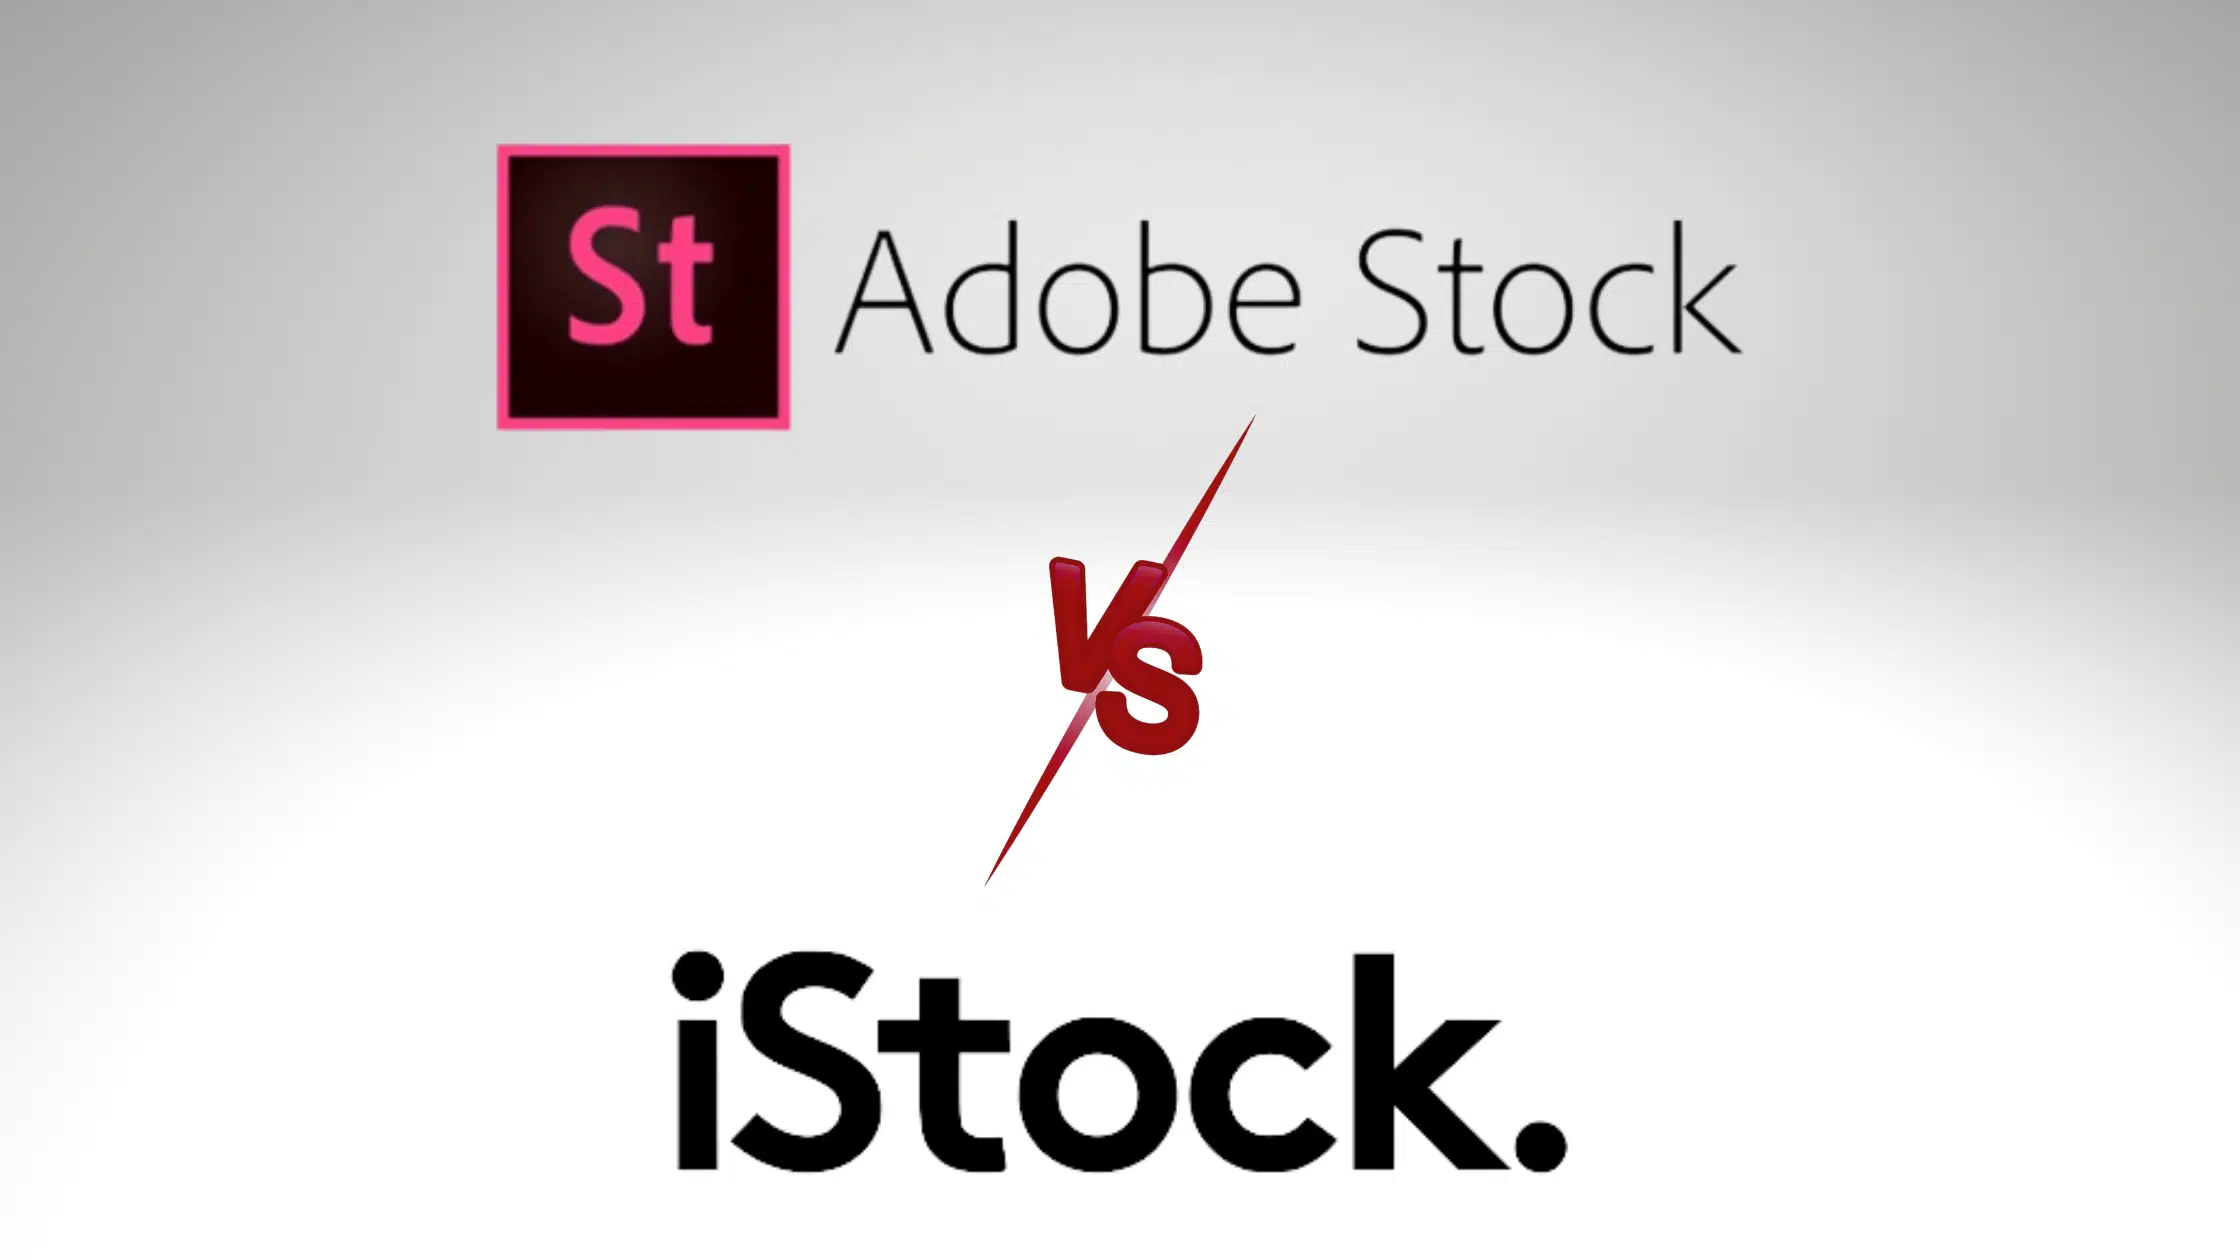 Adobe stock vs iStock